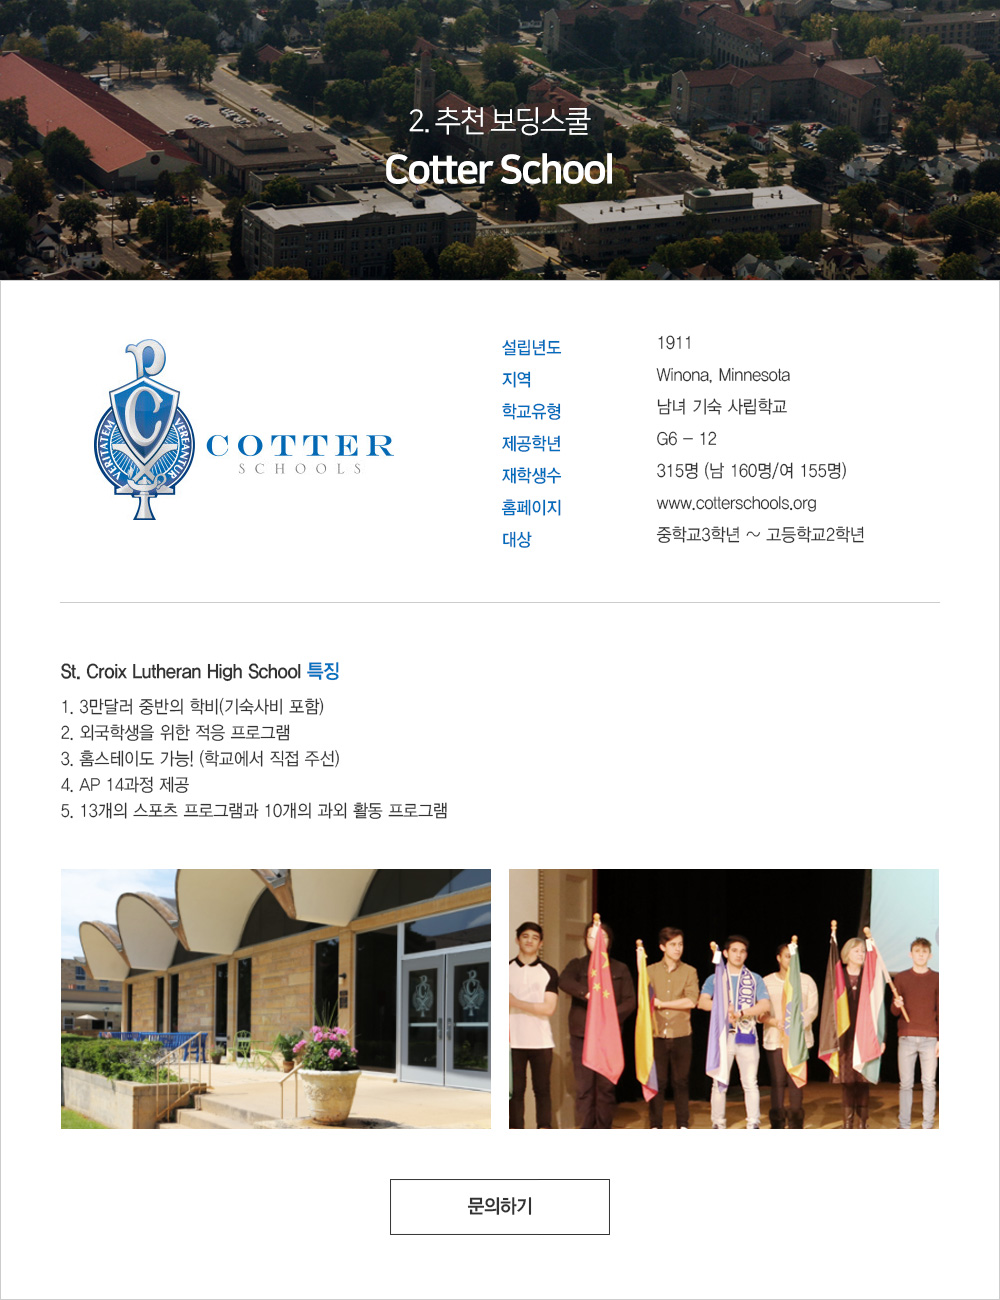 Cotter School